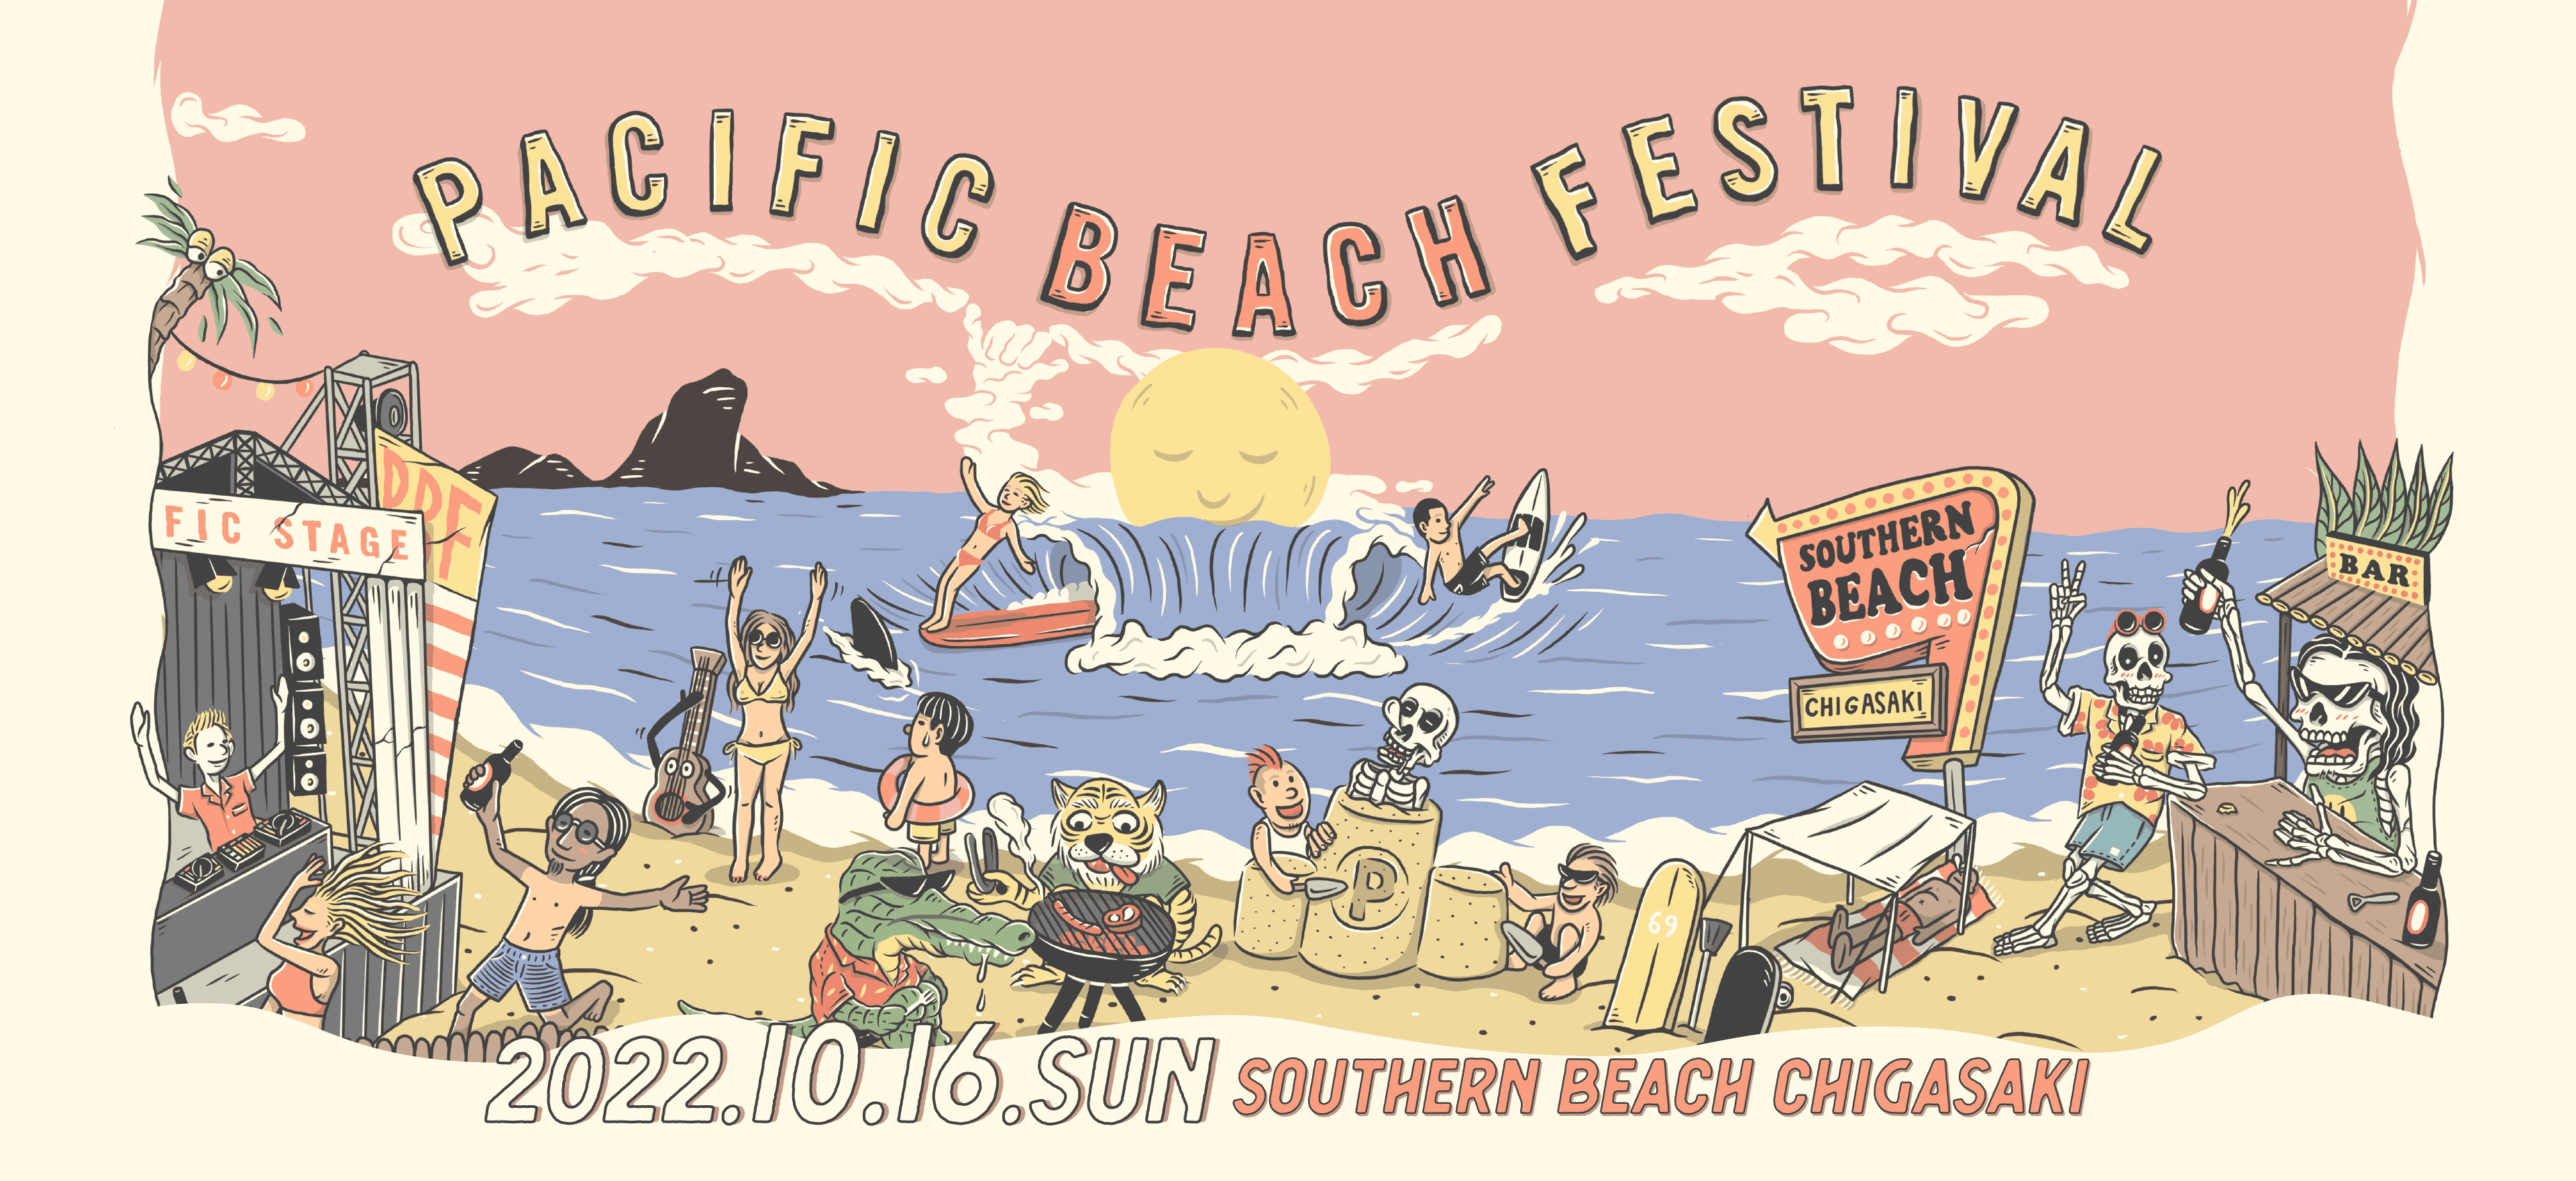 パシフィックビーチフェスティバル'22